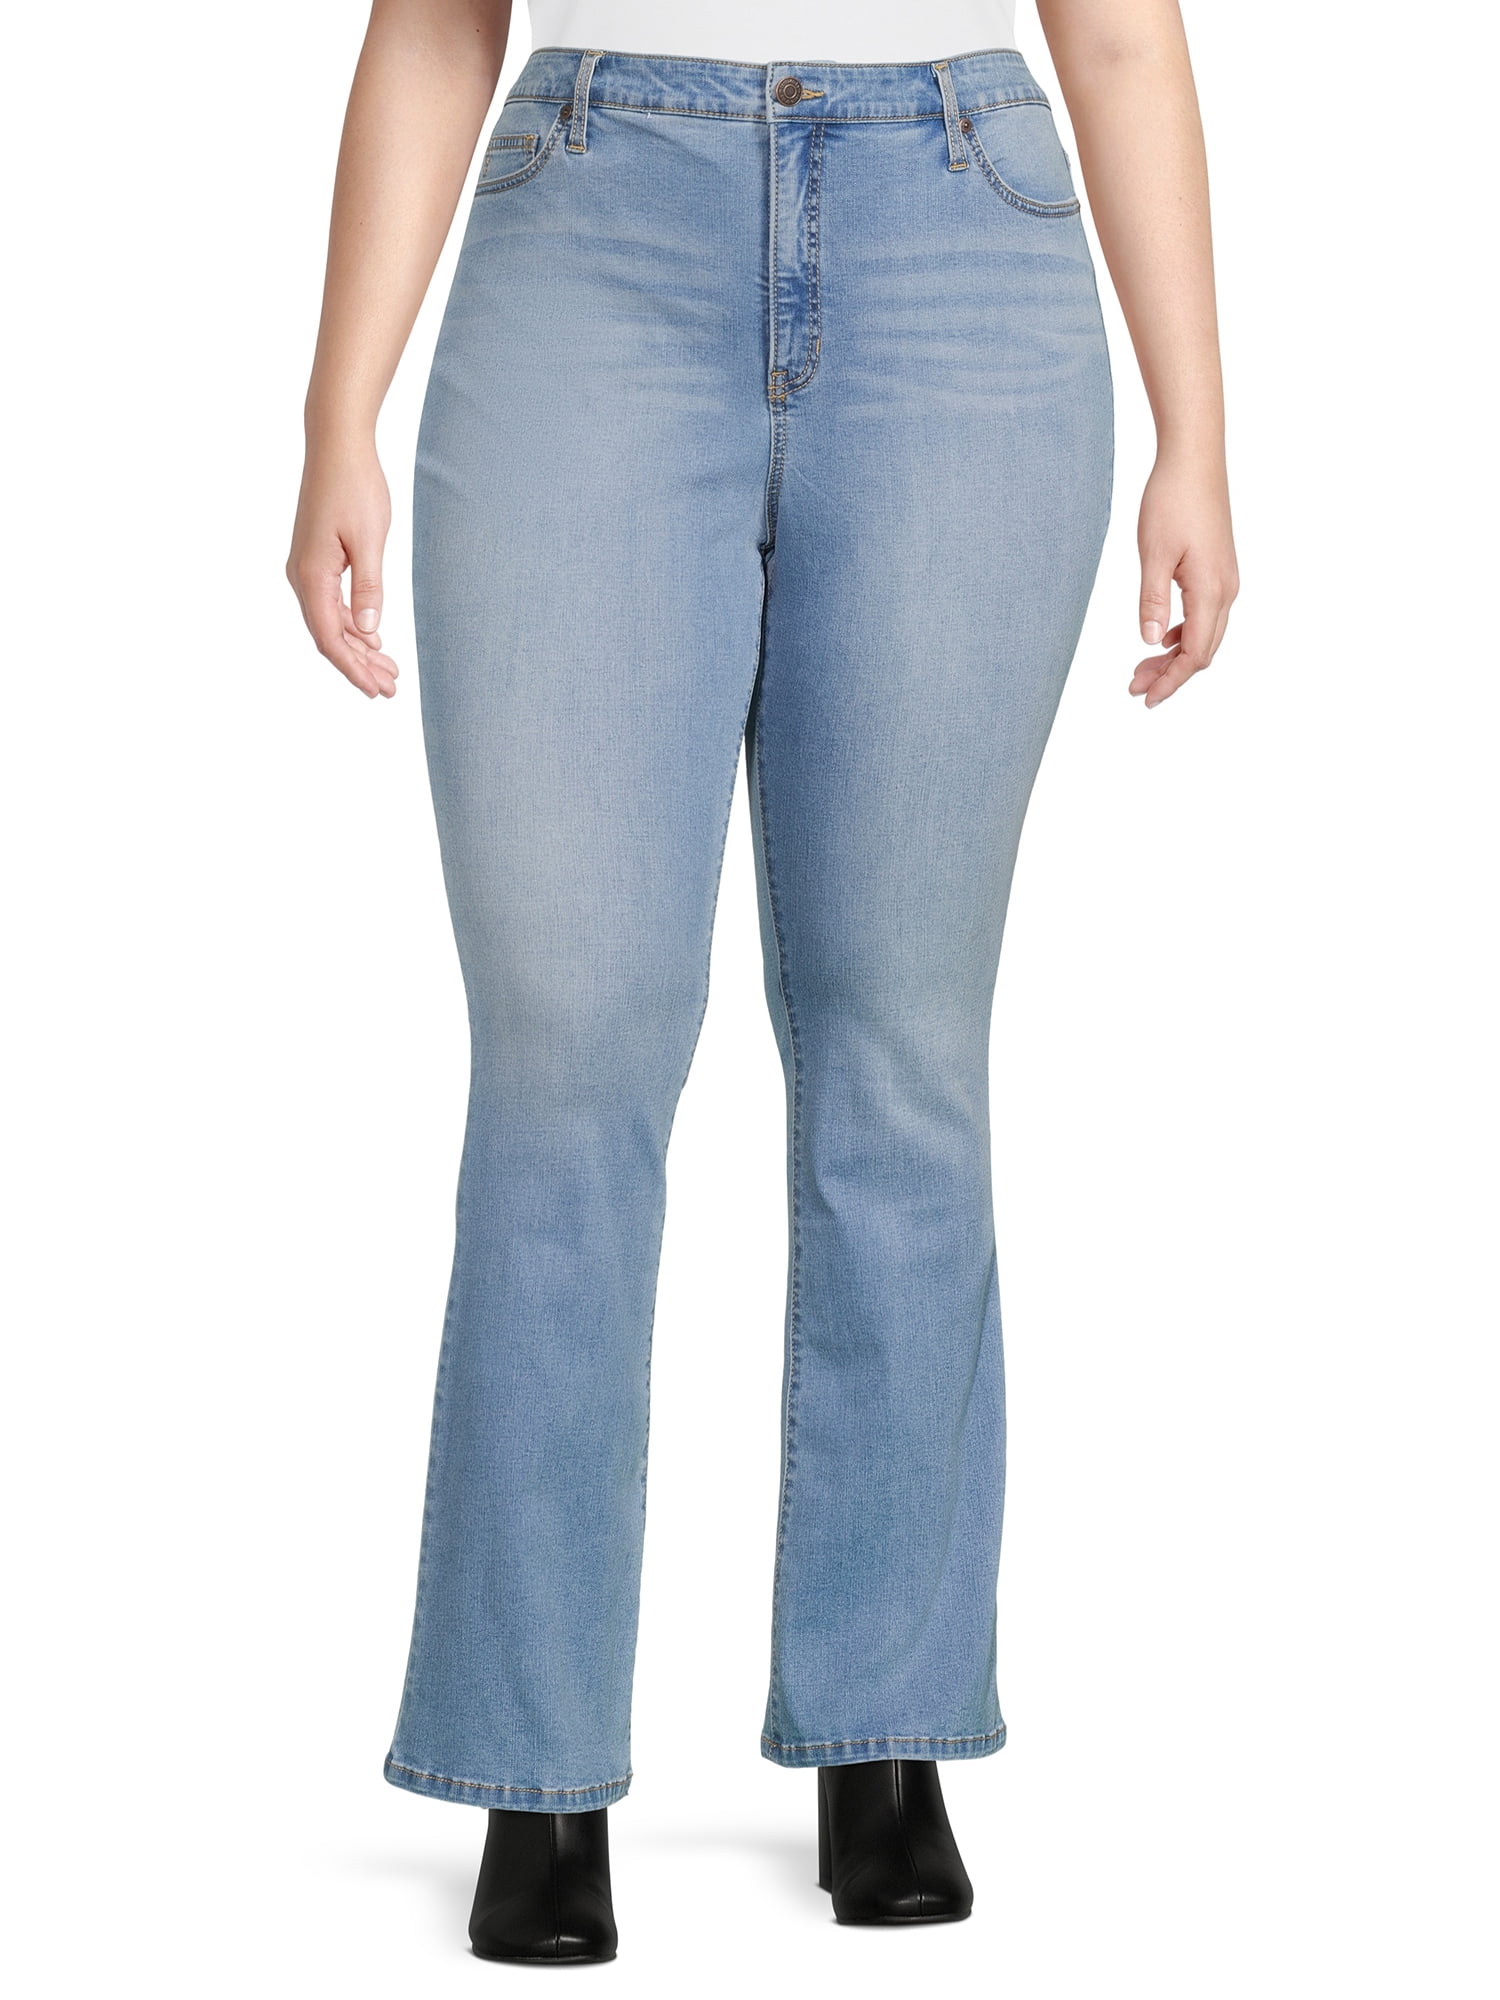 Terra & Sky Women's Plus Size High Waist Bootcut Jeans 